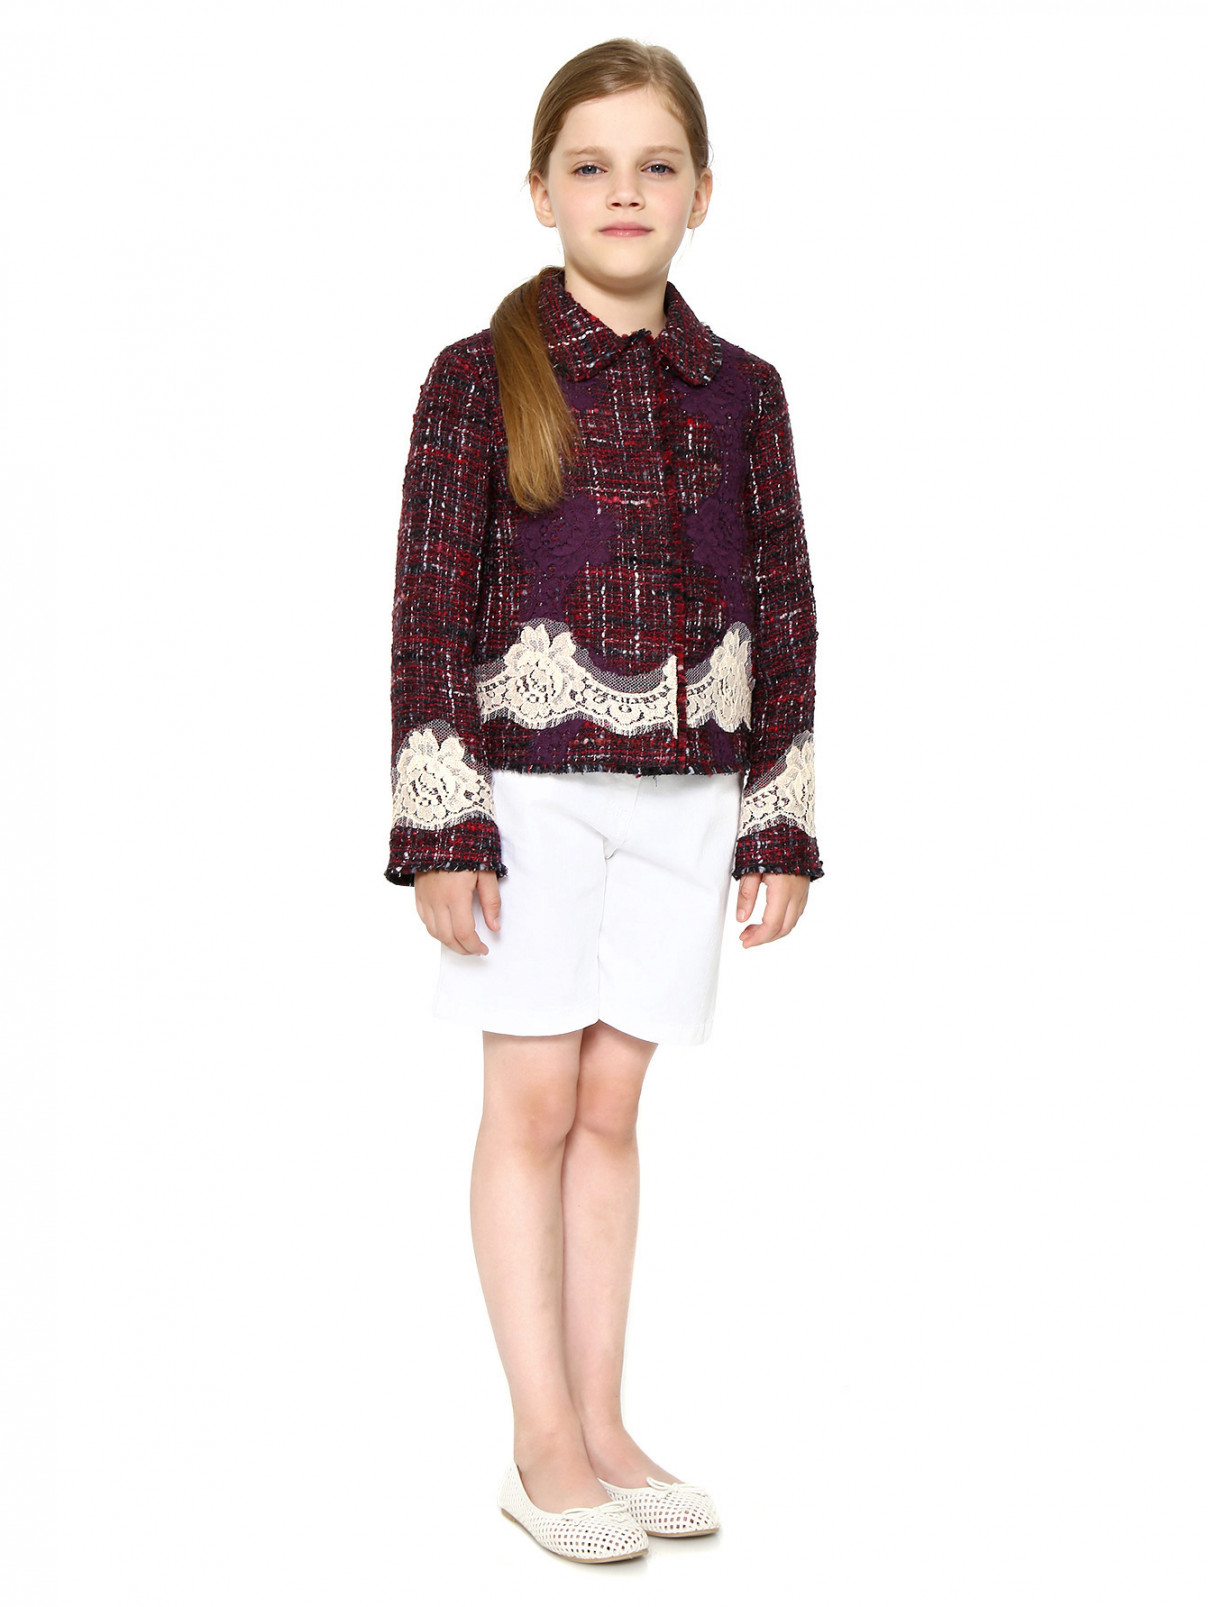 Жакет из шерсти и хлопка со вставками из кружева Dolce & Gabbana  –  Модель Общий вид  – Цвет:  Красный